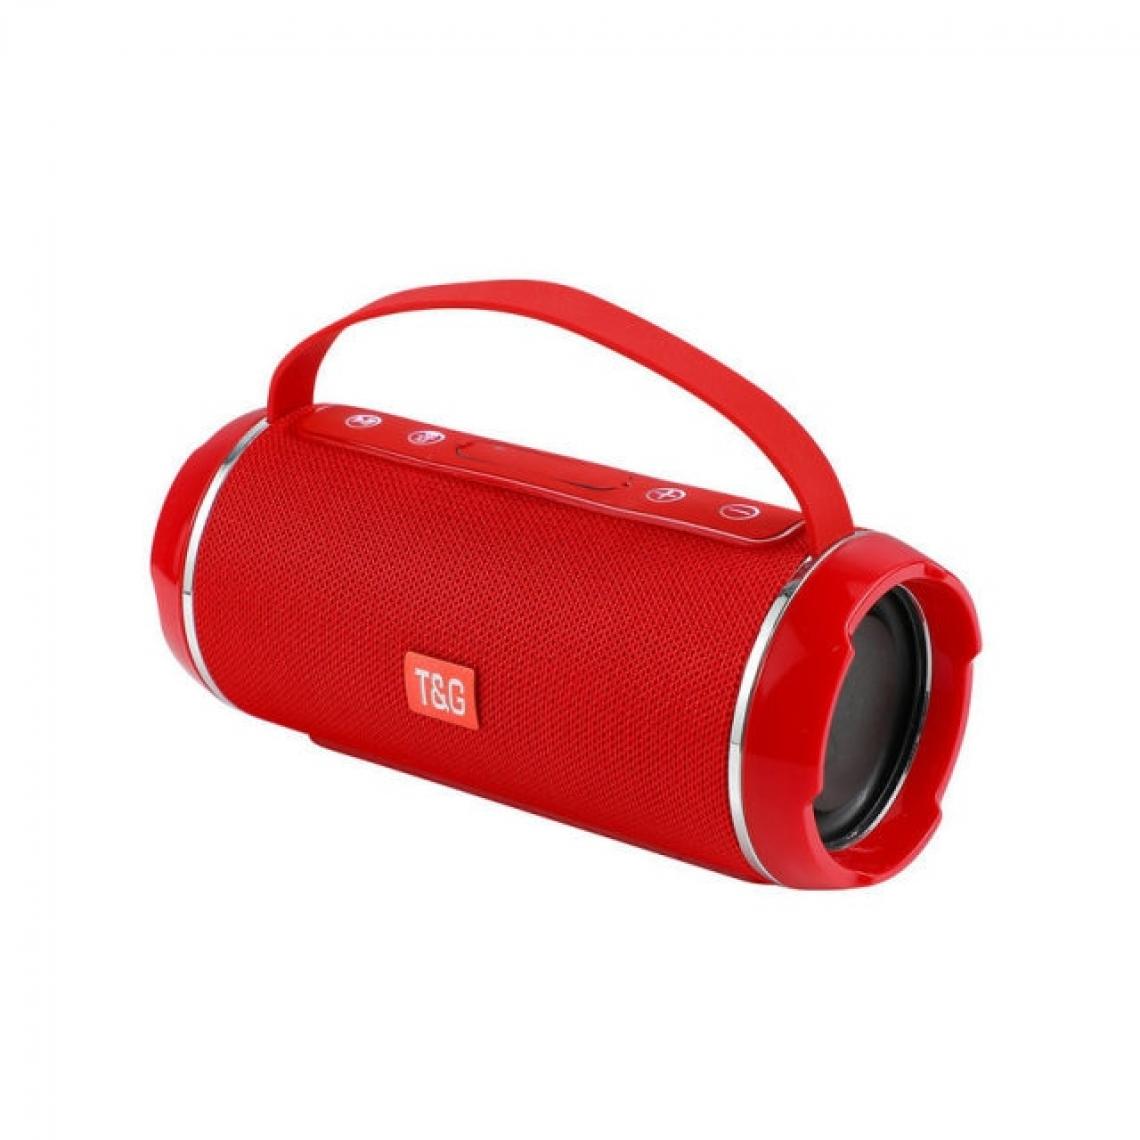 Universal - Haut-parleur Bluetooth sans fil portable imperméable à l'extérieur 40W Haut-parleur Subwoofer Music Center Haut-parleur 3D Stéréo Support TWS Supp | Haut-parleur portable (rouge) - Enceinte PC